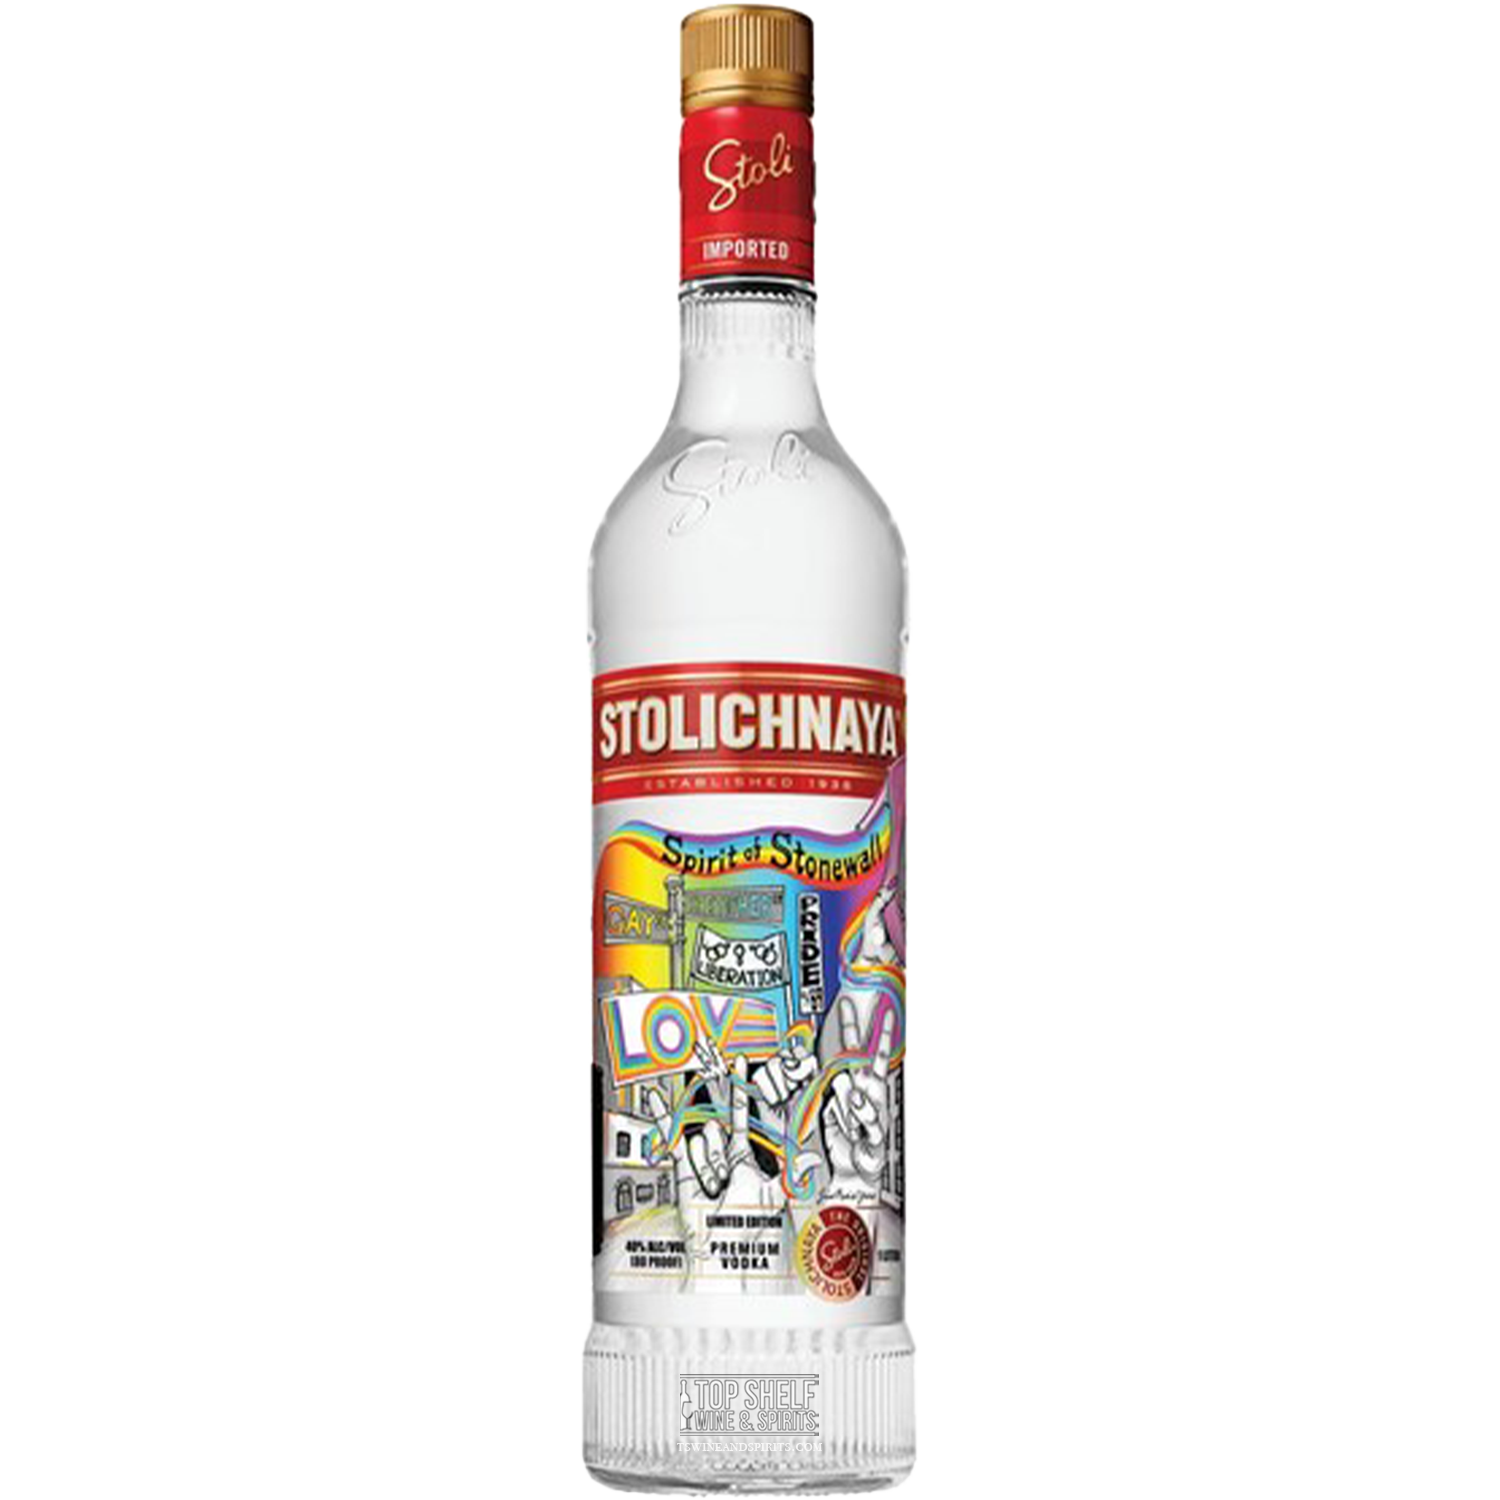 Stolichnaya Stoli Spirit of Stonewall Vodka 1L (Pride Limited Edition)